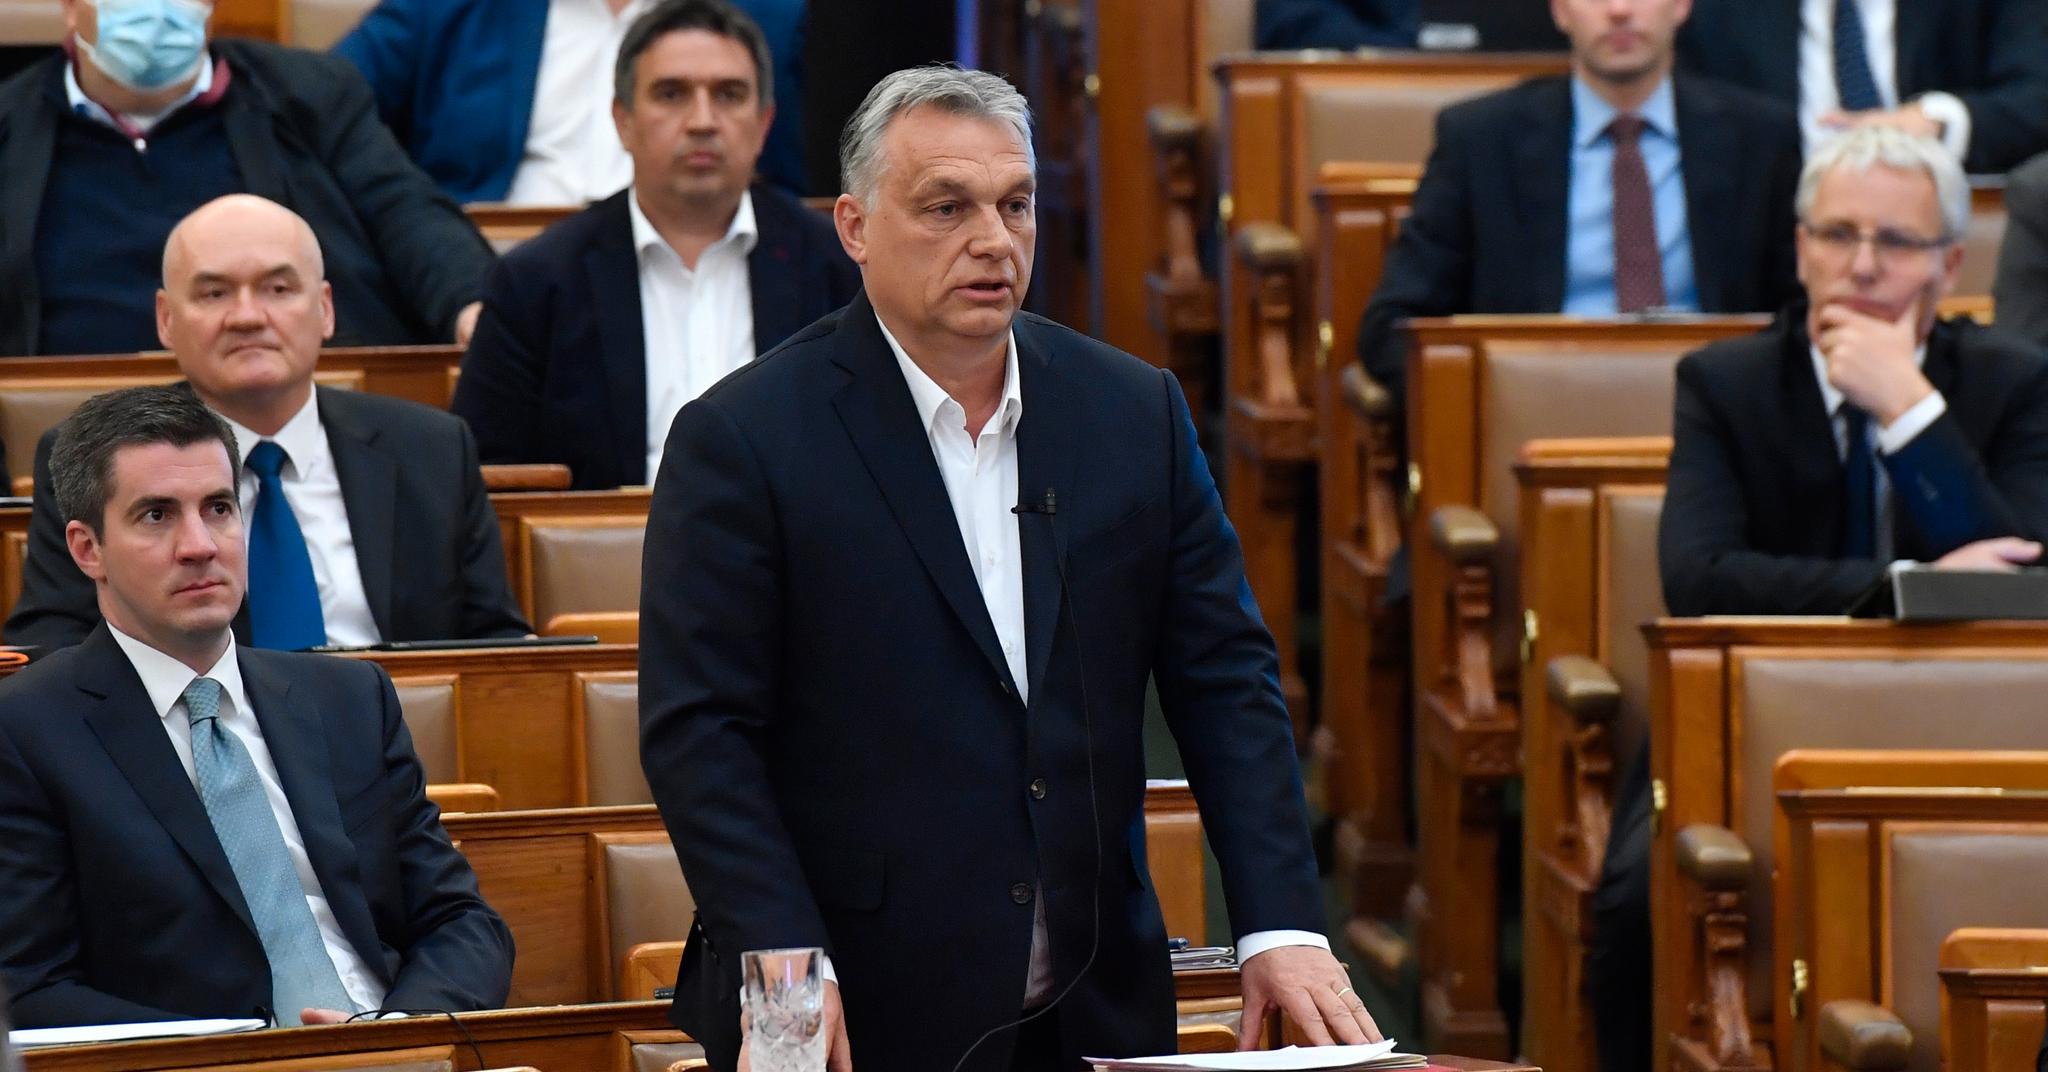 Statsminister Viktor Orbán får all makt på ubestemt tid. Unntakstilstanden ble vedtatt av parlamentet i Budapest. Partiet hans har 2/3 flertall, selv om det kun fikk litt under 50 prosents oppslutning i siste valg.